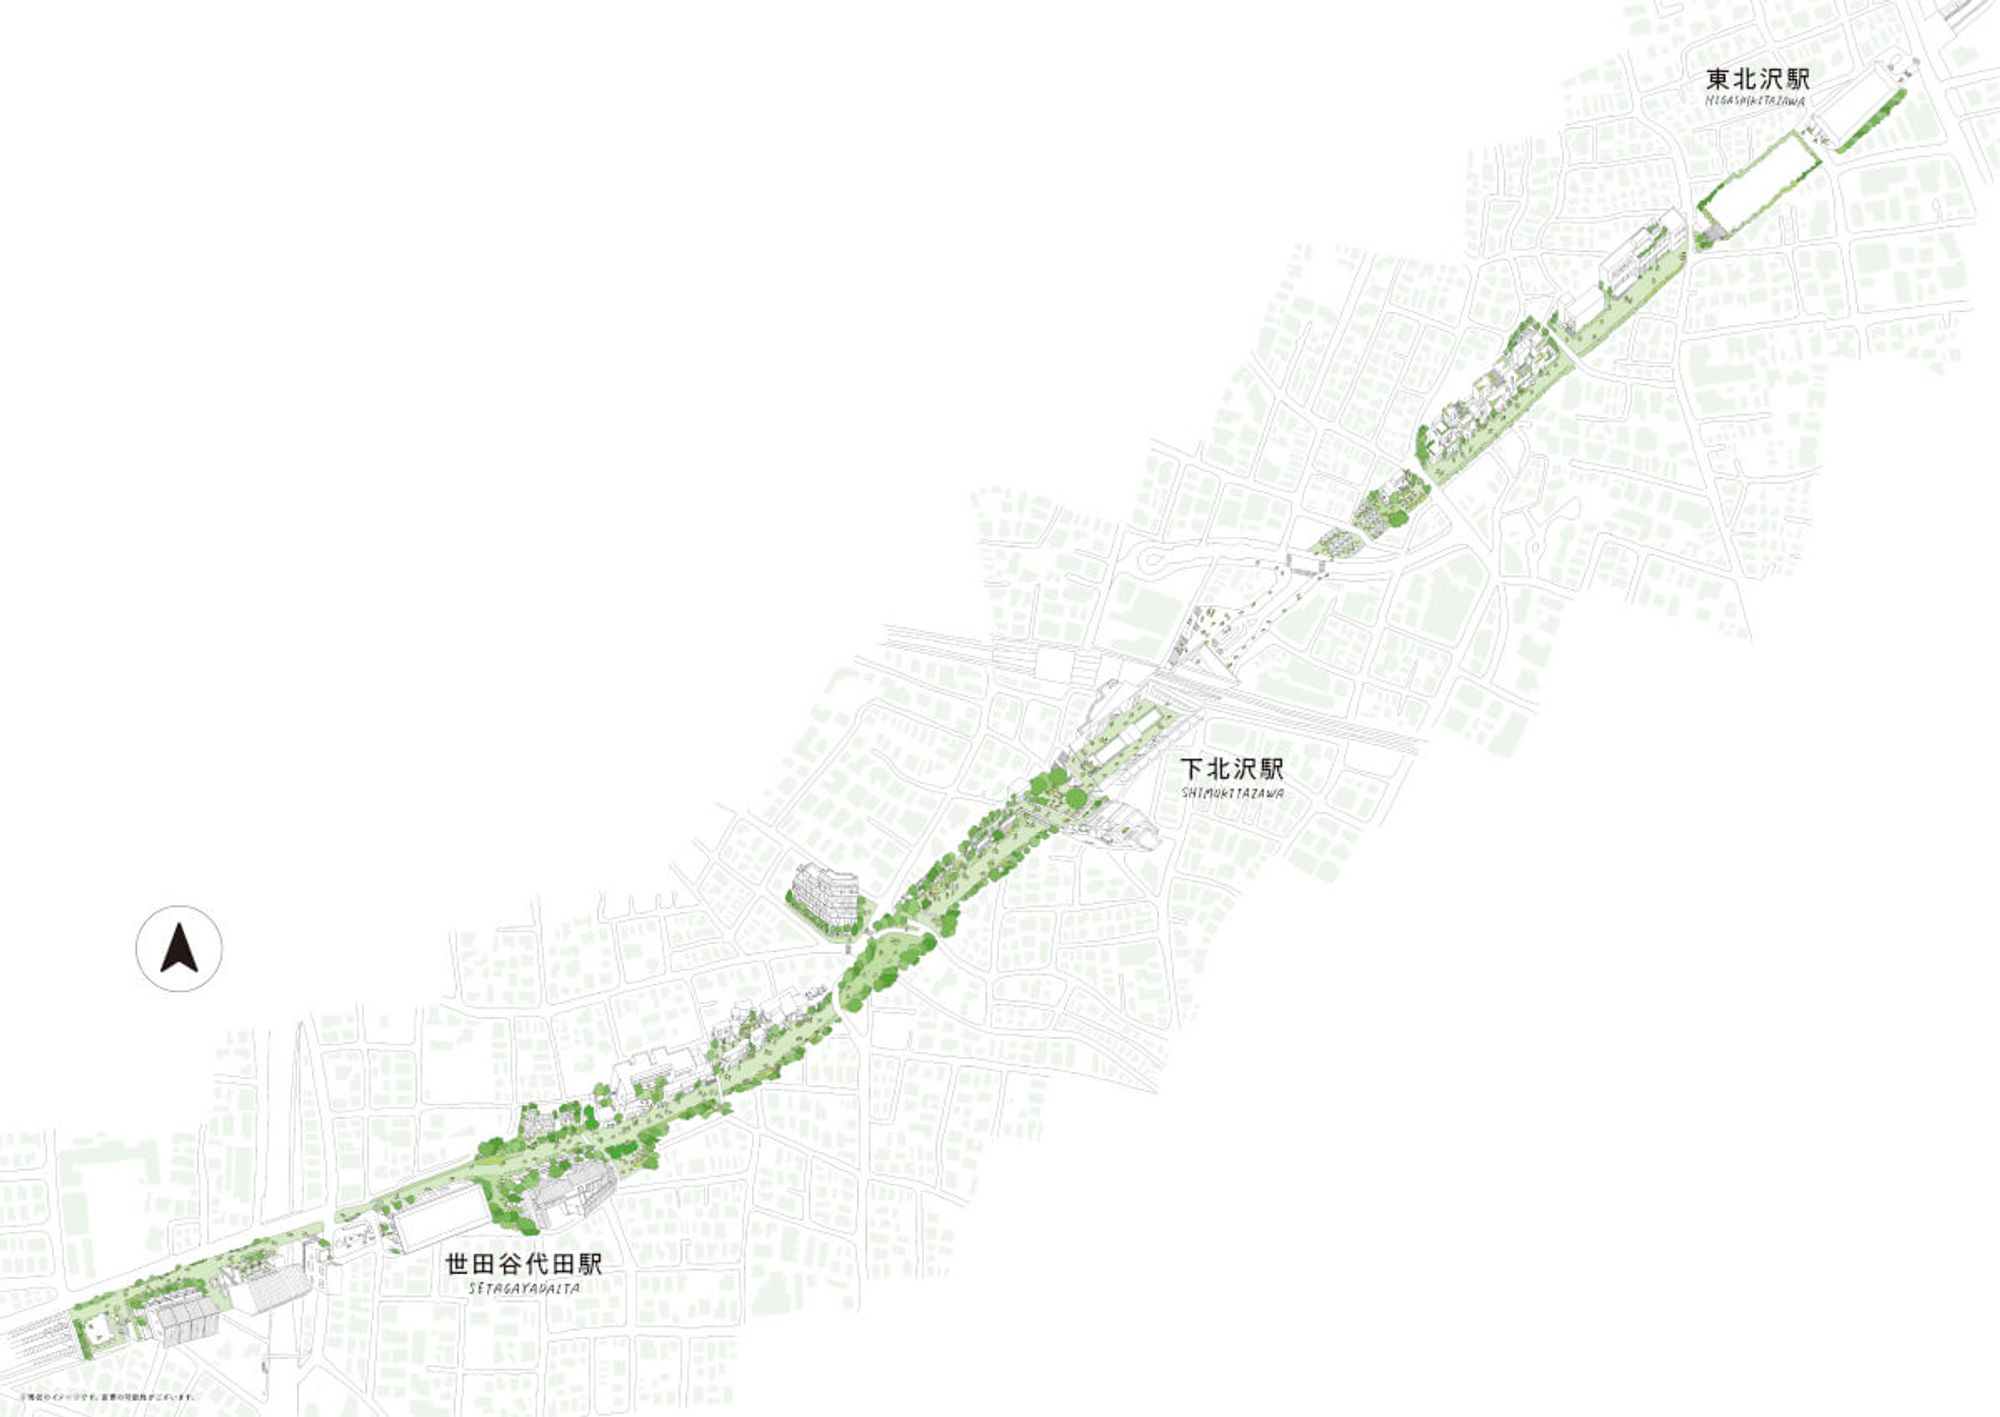 図1 下北沢 小田急線路街平面図